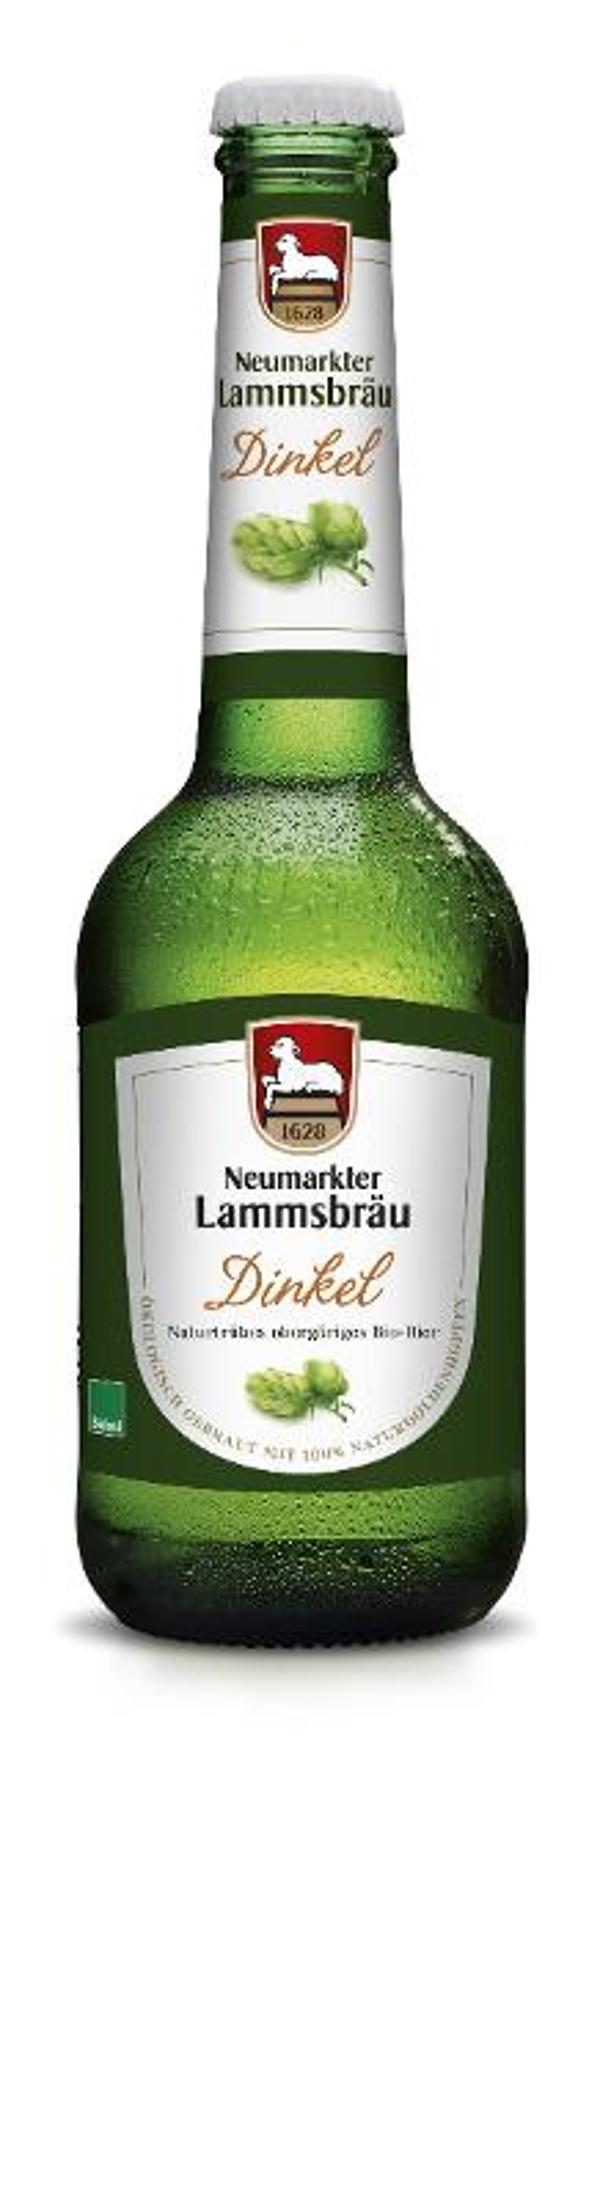 Produktfoto zu Lammsbräu Dinkel Bier 0,33l